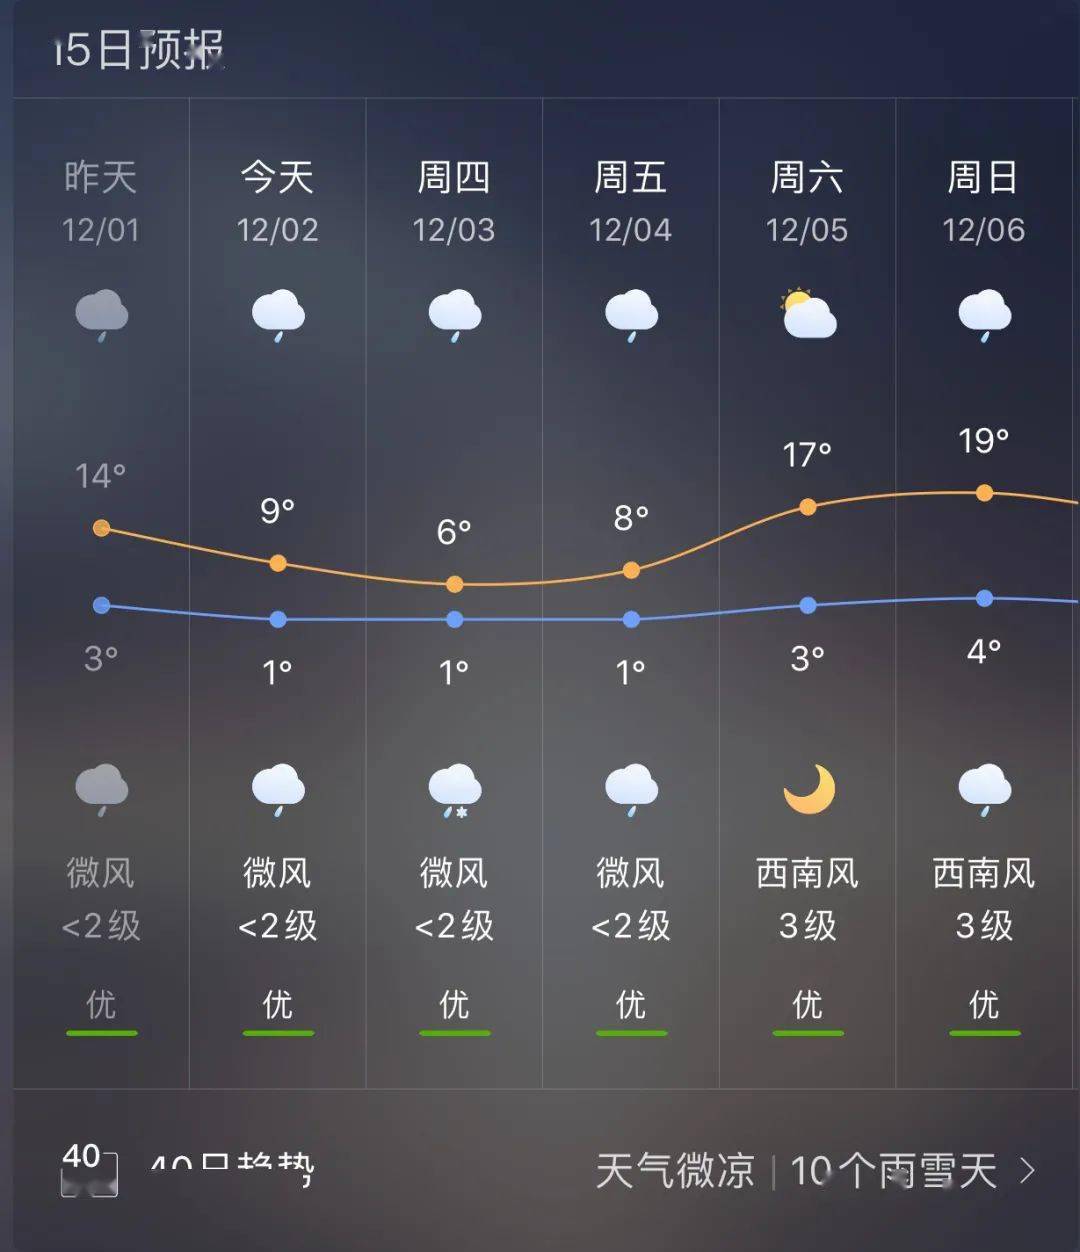 明天比今天还冷!宣威各乡镇天气预报!